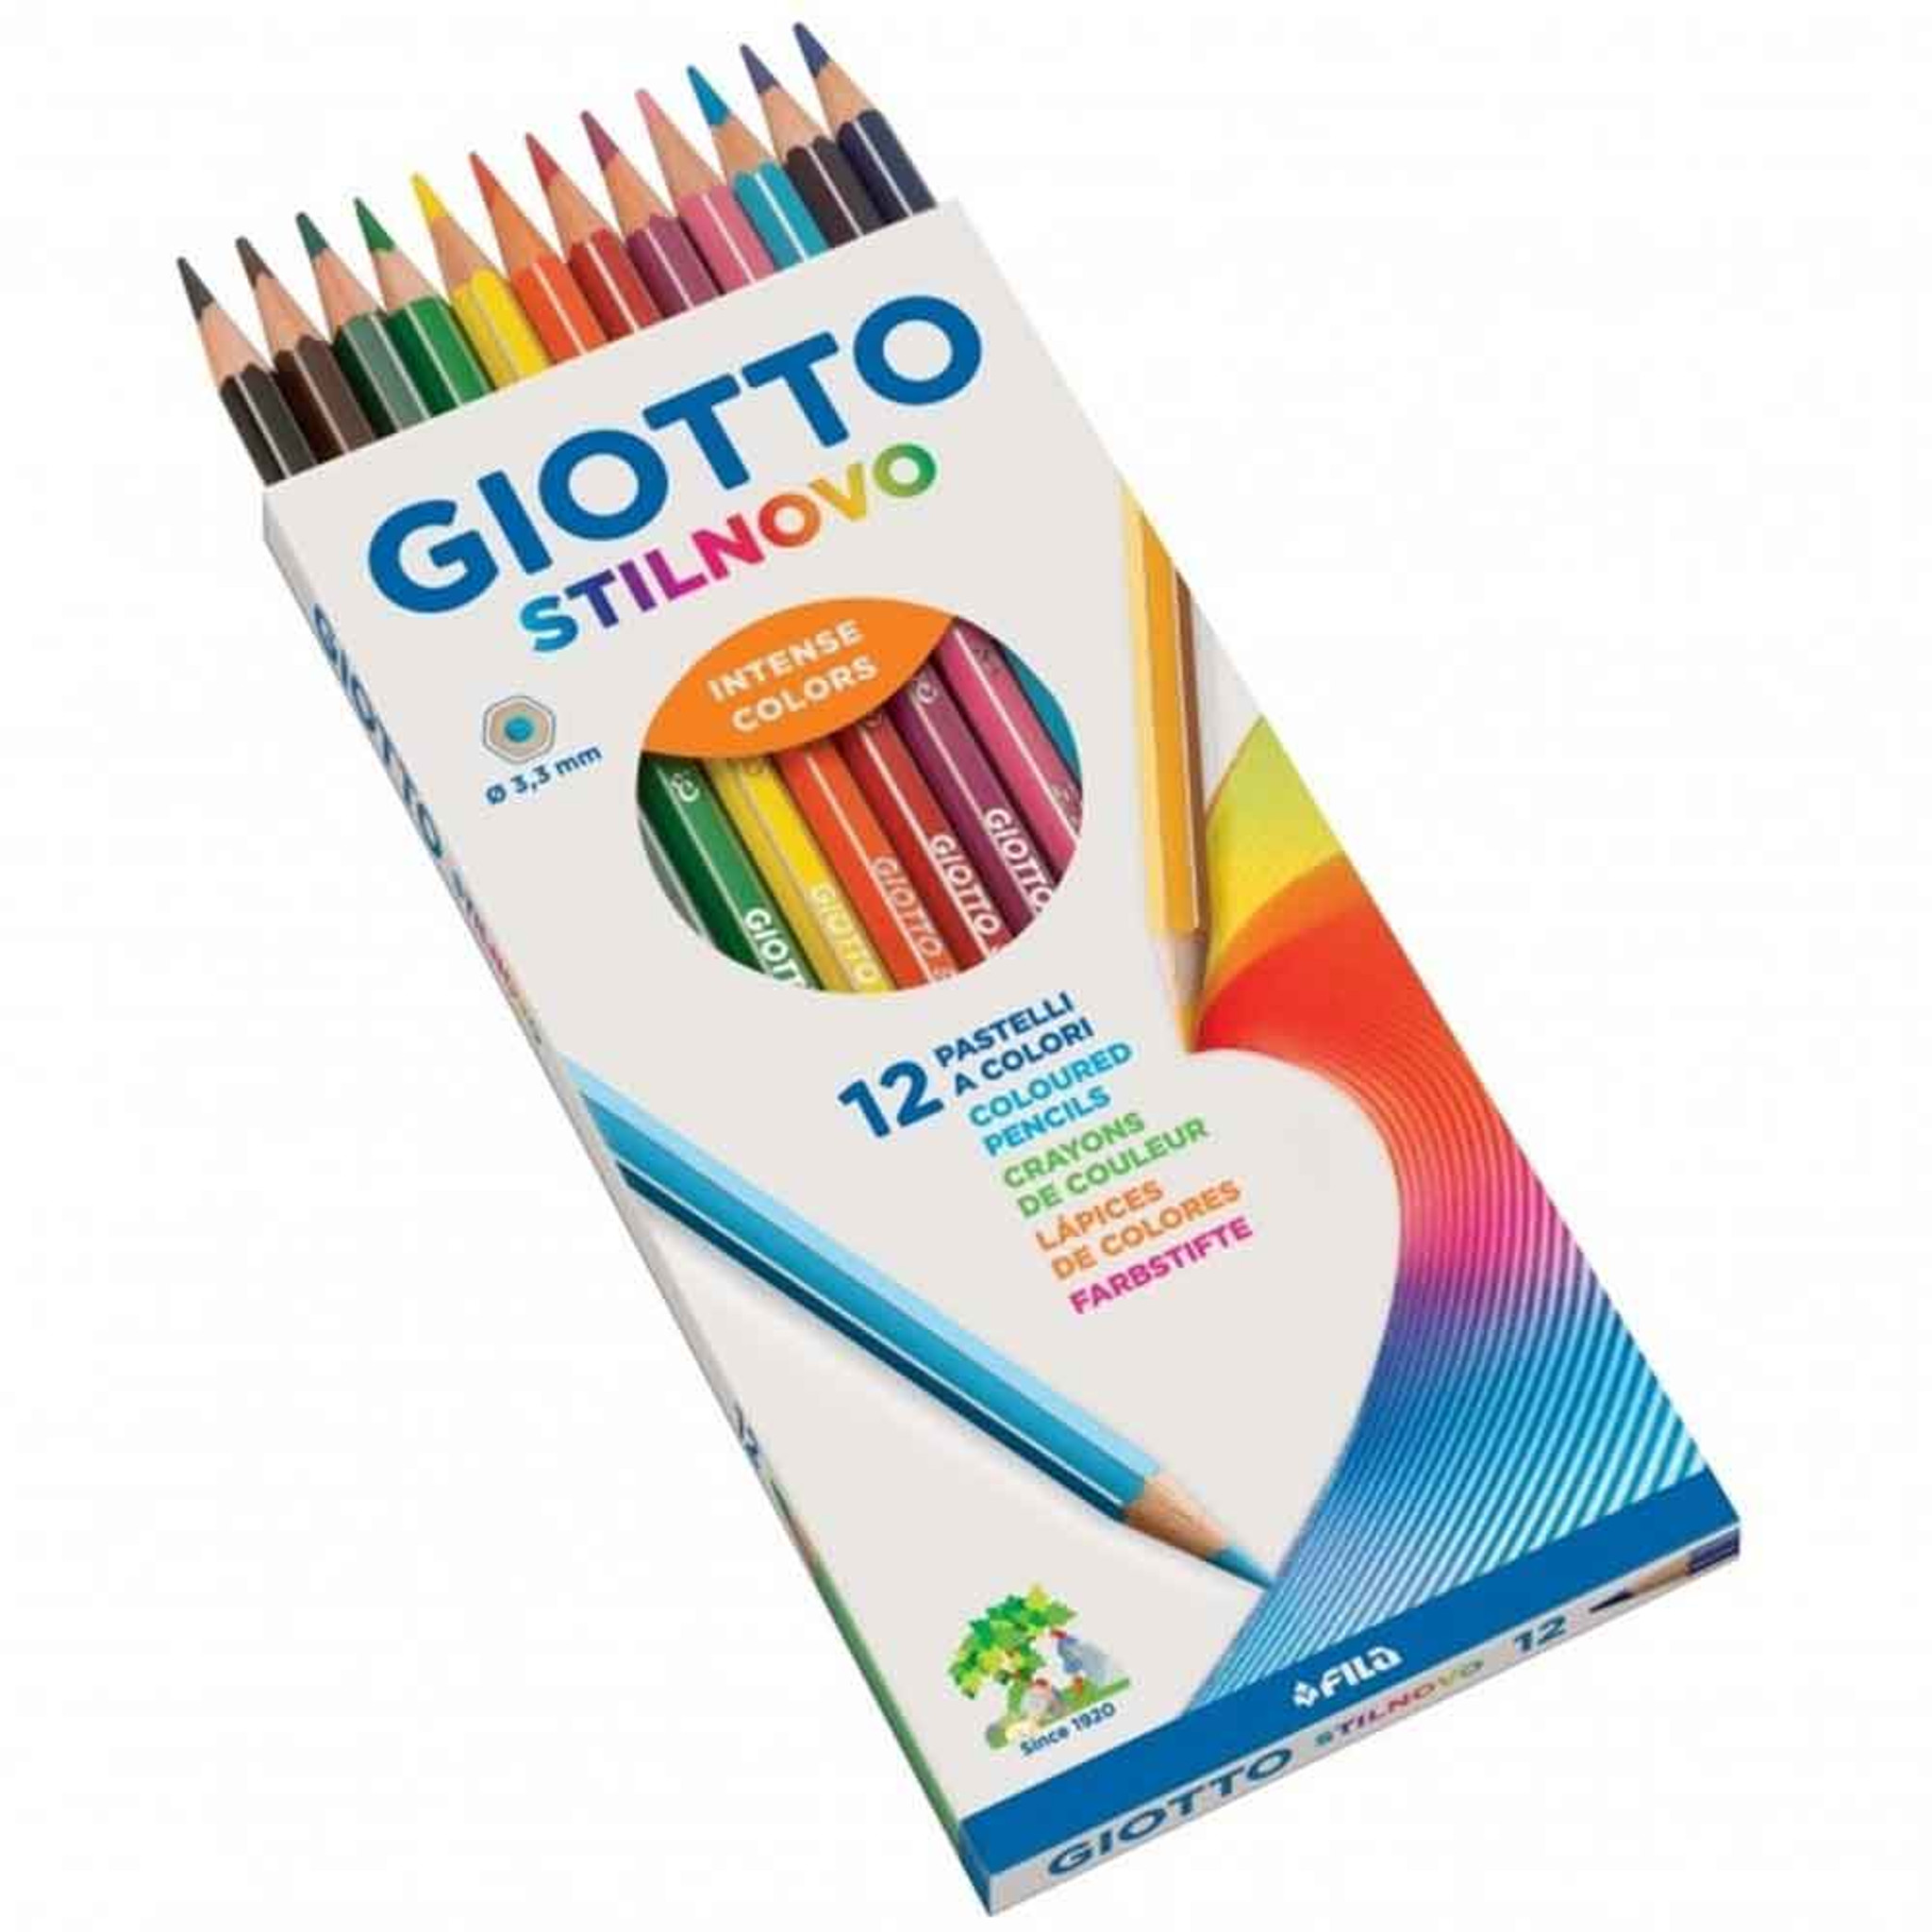 Giotto Stilnovo Acquarell Watercolour Pencils | Set of 12 assorted Pencils